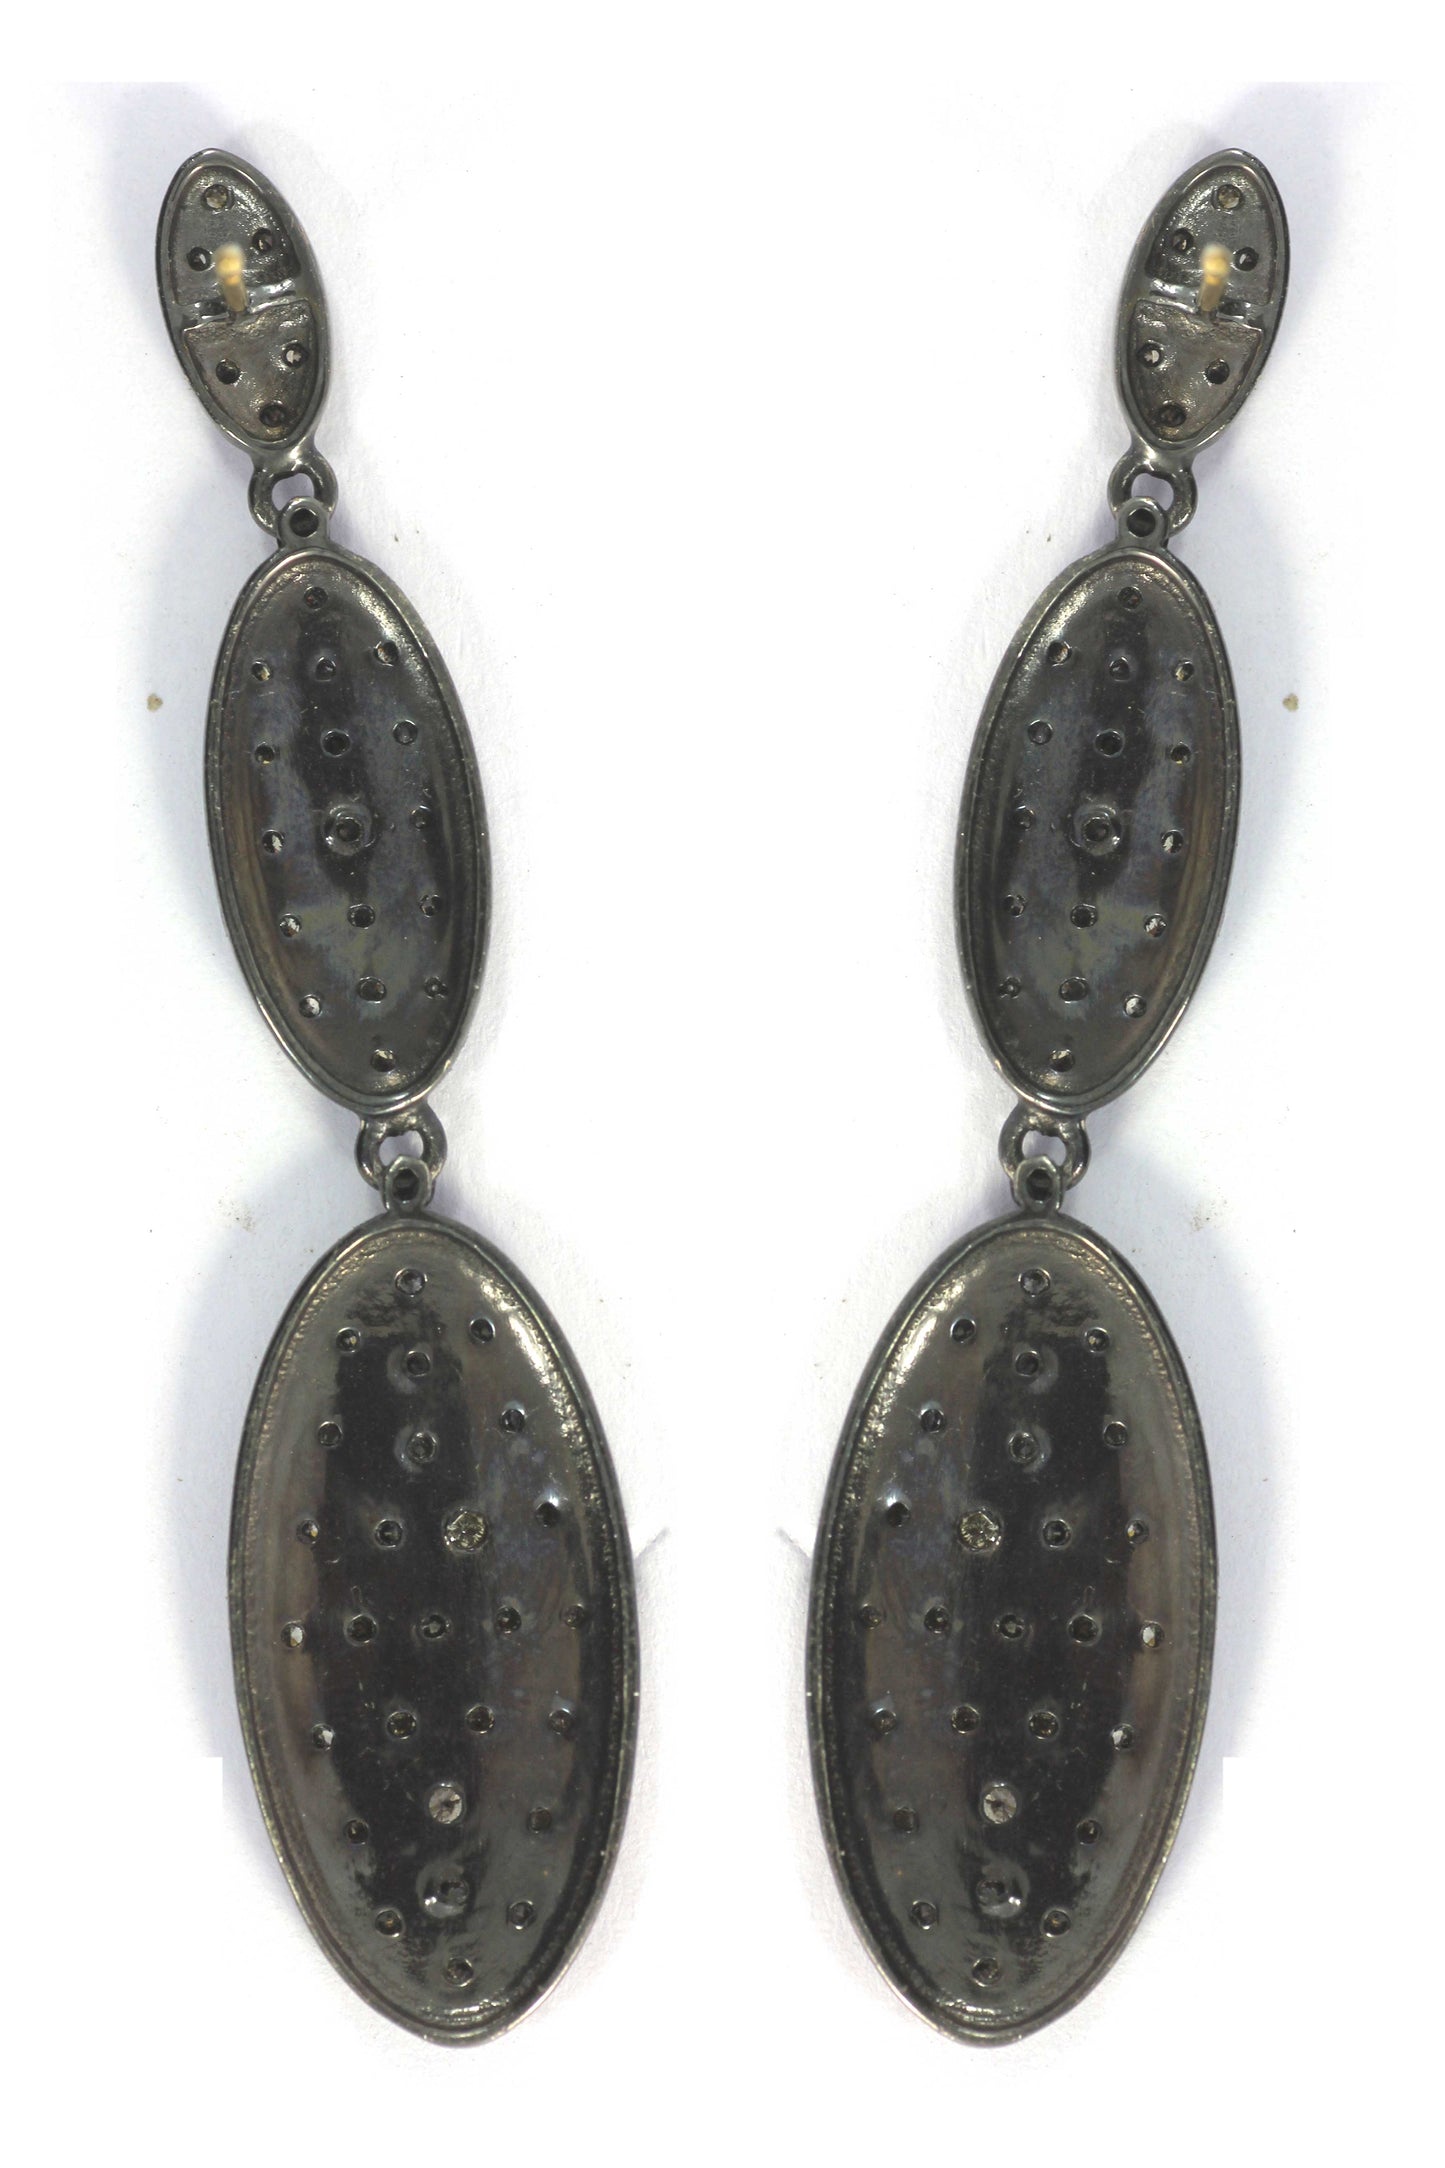 Diamond Silver Earring .925 Oxidized Sterling Silver Diamond Earring, Genuine handmade pave diamond Earring